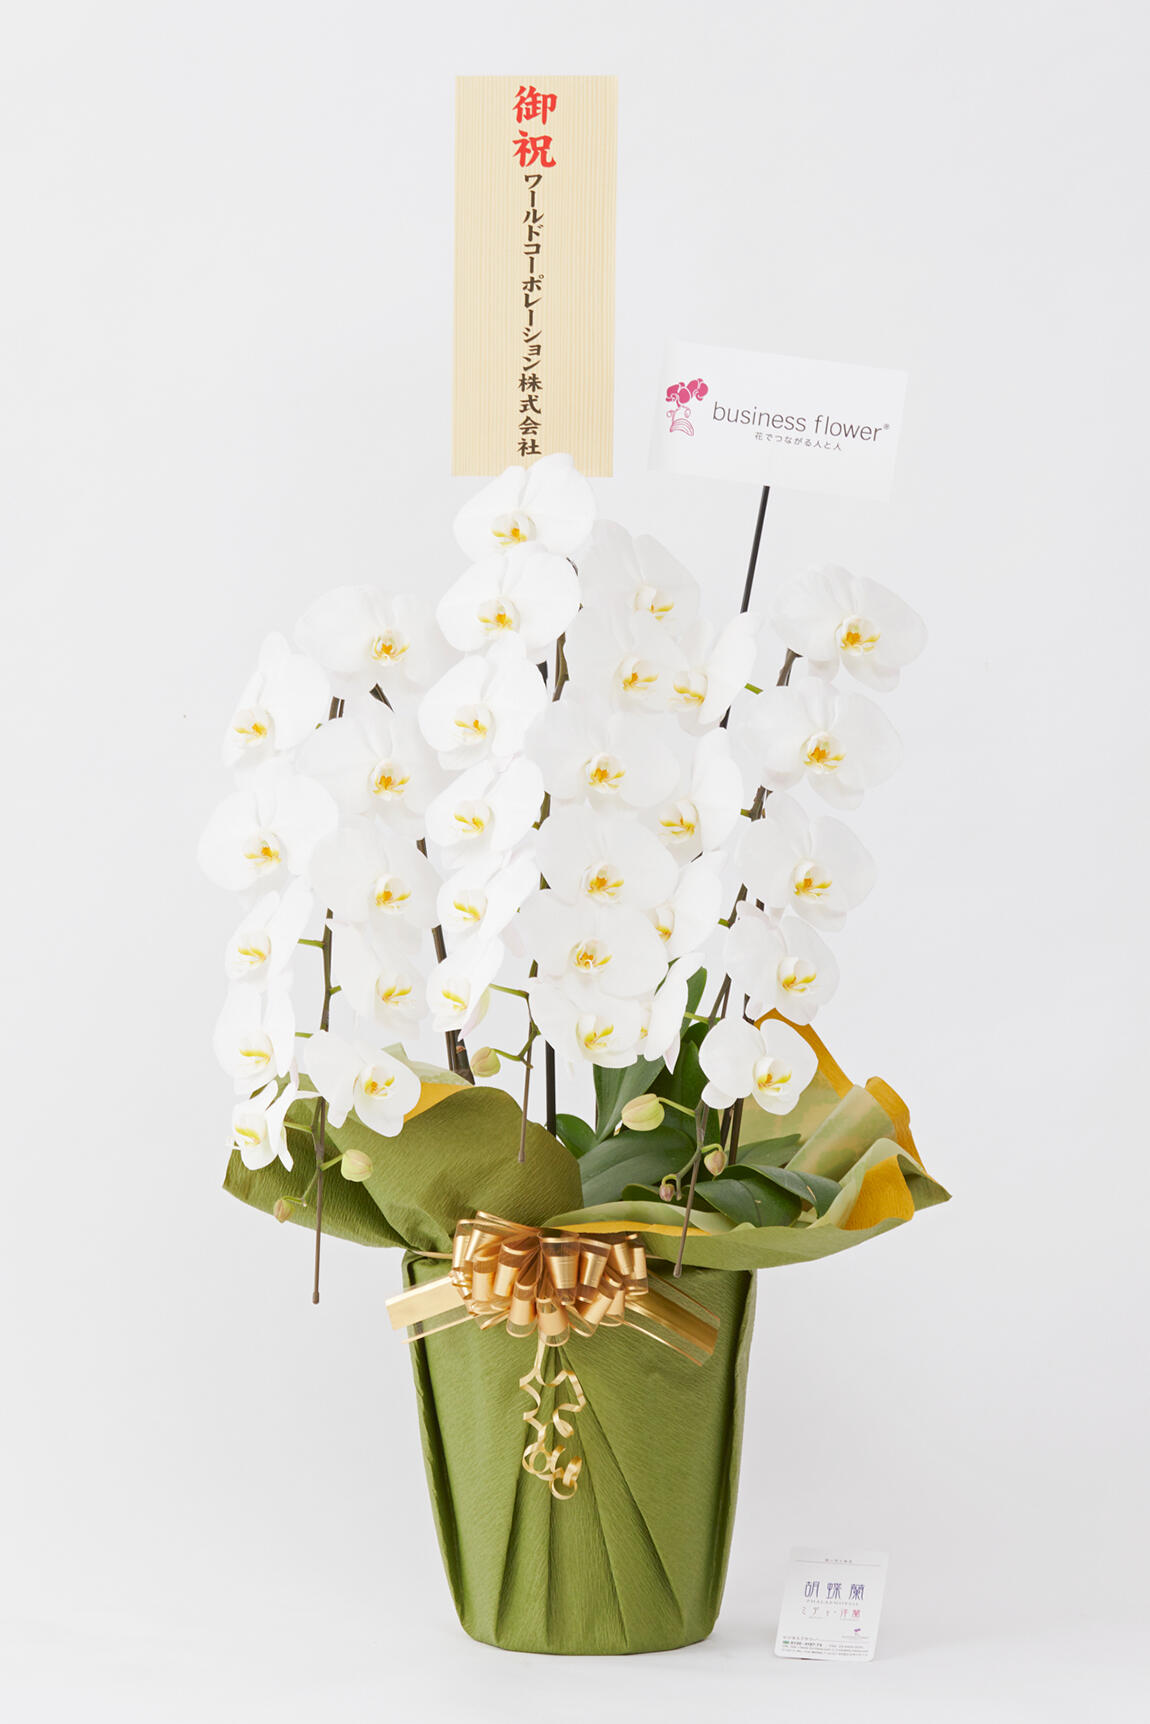 <p>お祝い花の通販サイトビジネスフラワーでは、別途無料でお名札をお付けできるので、フォーマルなビジネスシーンでも贈りやすく、会って直接お祝い花を渡すことができない方へも気持ちを込めた贈答花をお届けする事が可能です。</p>